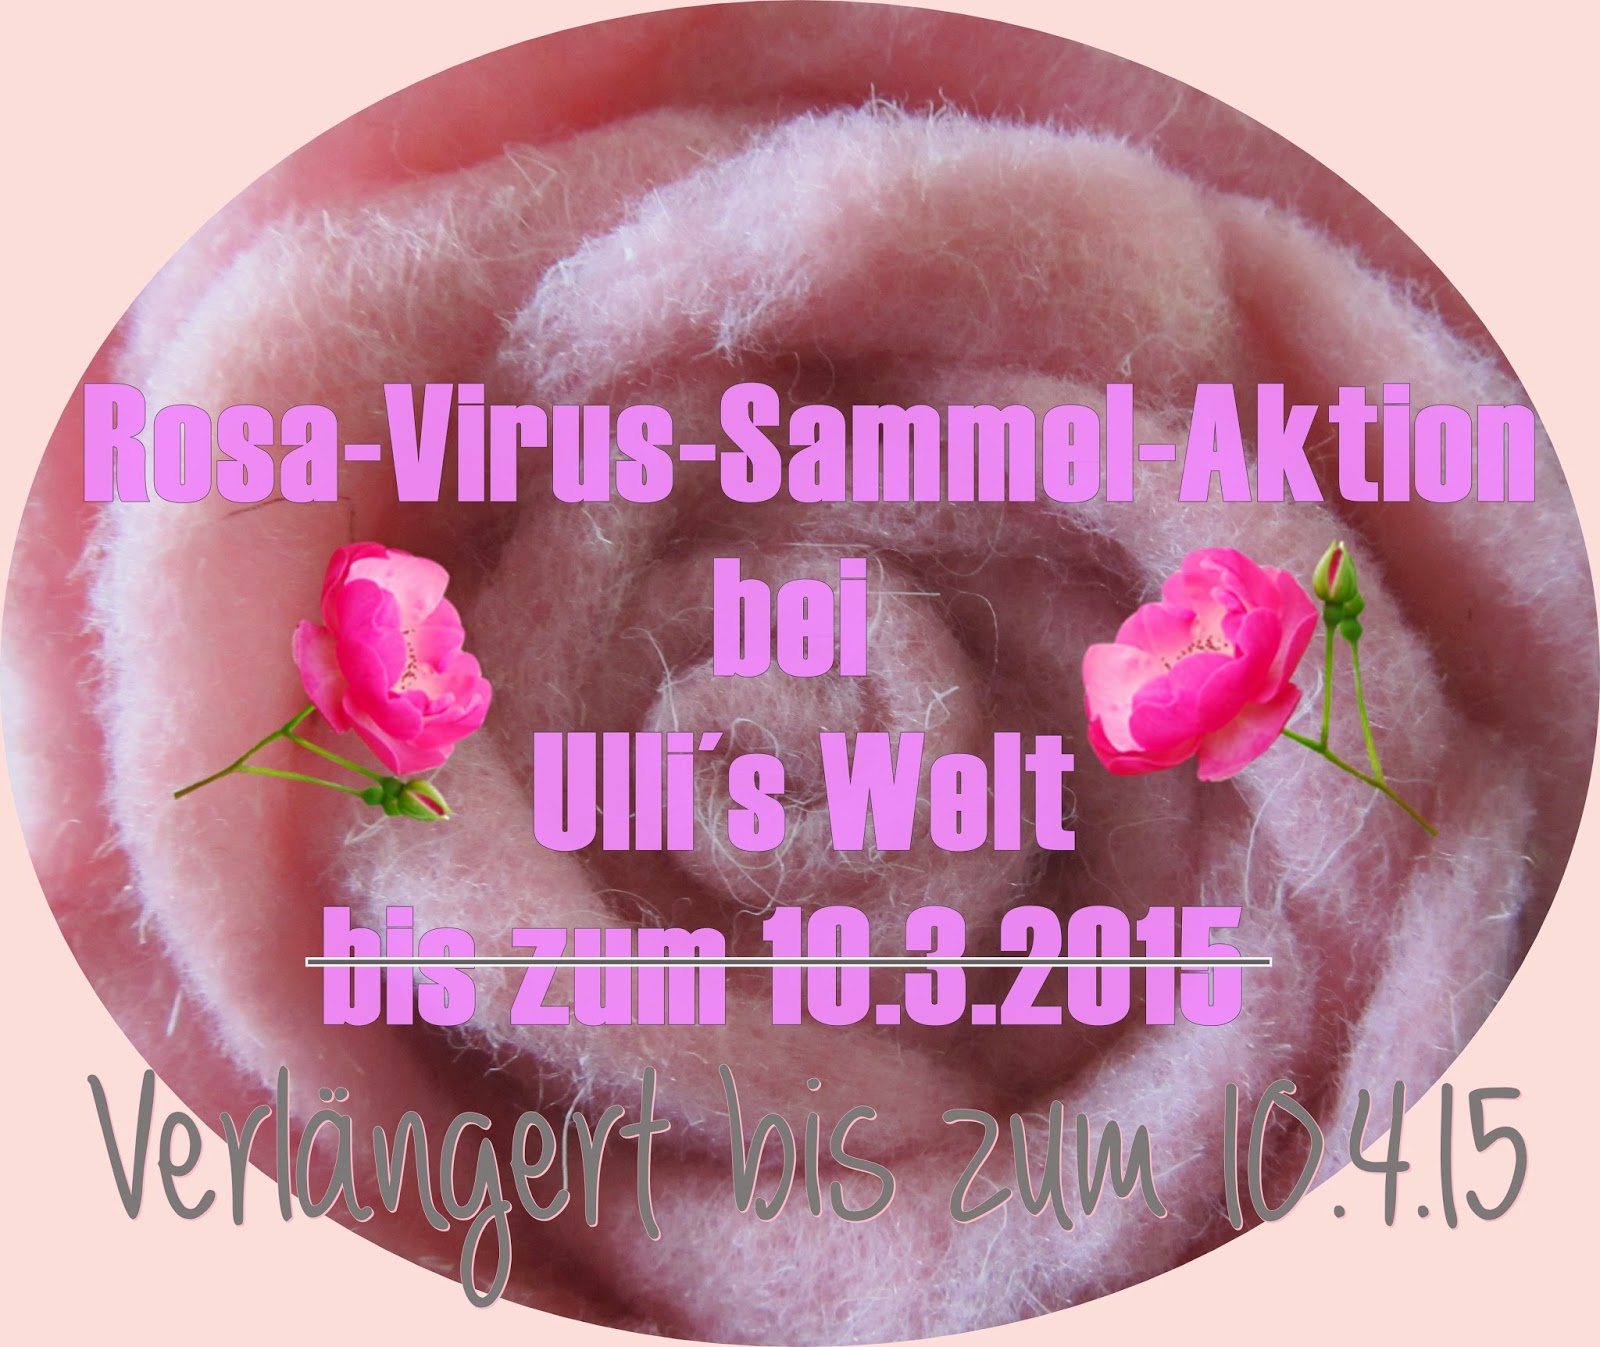 http://ulliswelt.blogspot.de/2015/02/streich-virus-und-ich-will-nein-ich.html